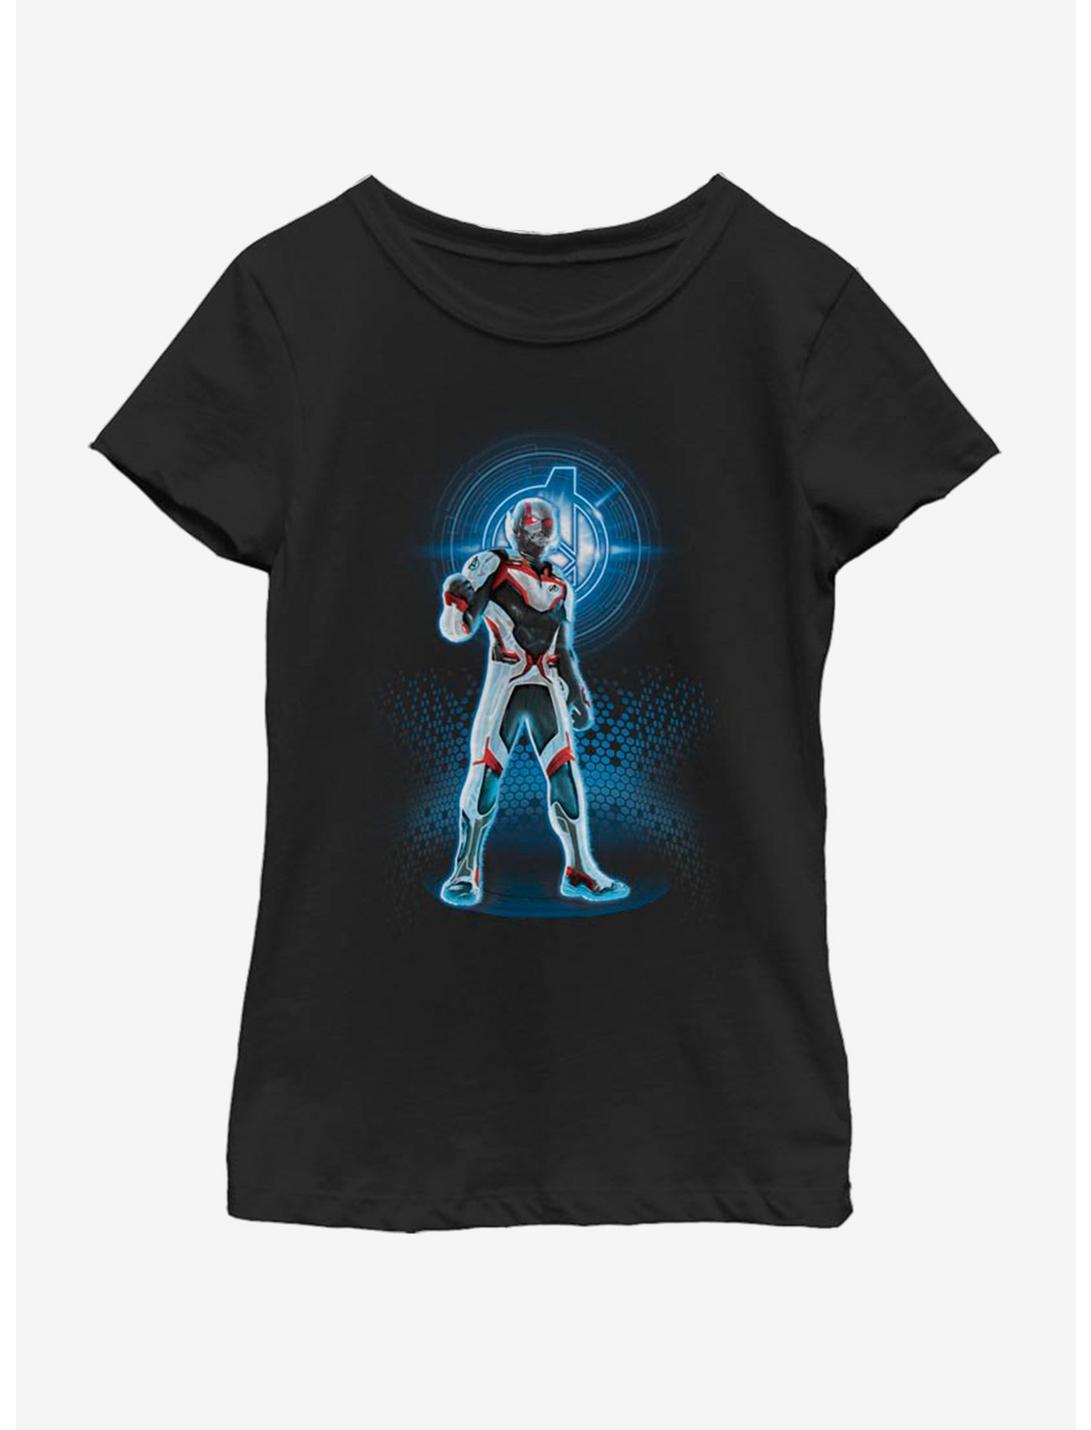 Marvel Avengers: Endgame Avenger Ant Man Youth Girls T-Shirt, BLACK, hi-res